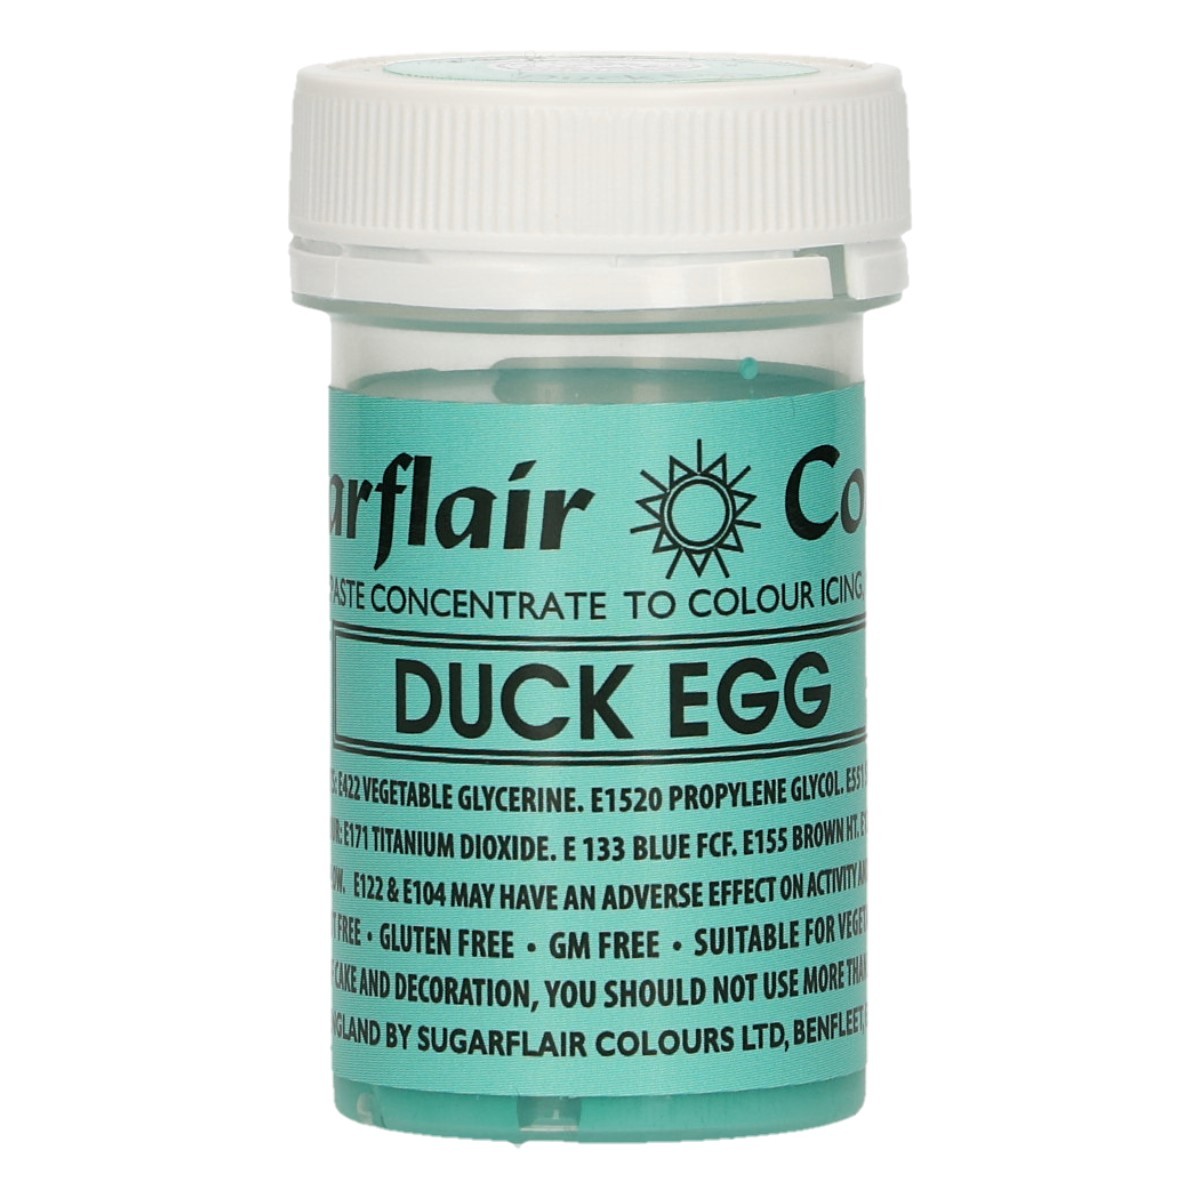 Χρώμα πάστα duck egg 25g rSugarflair